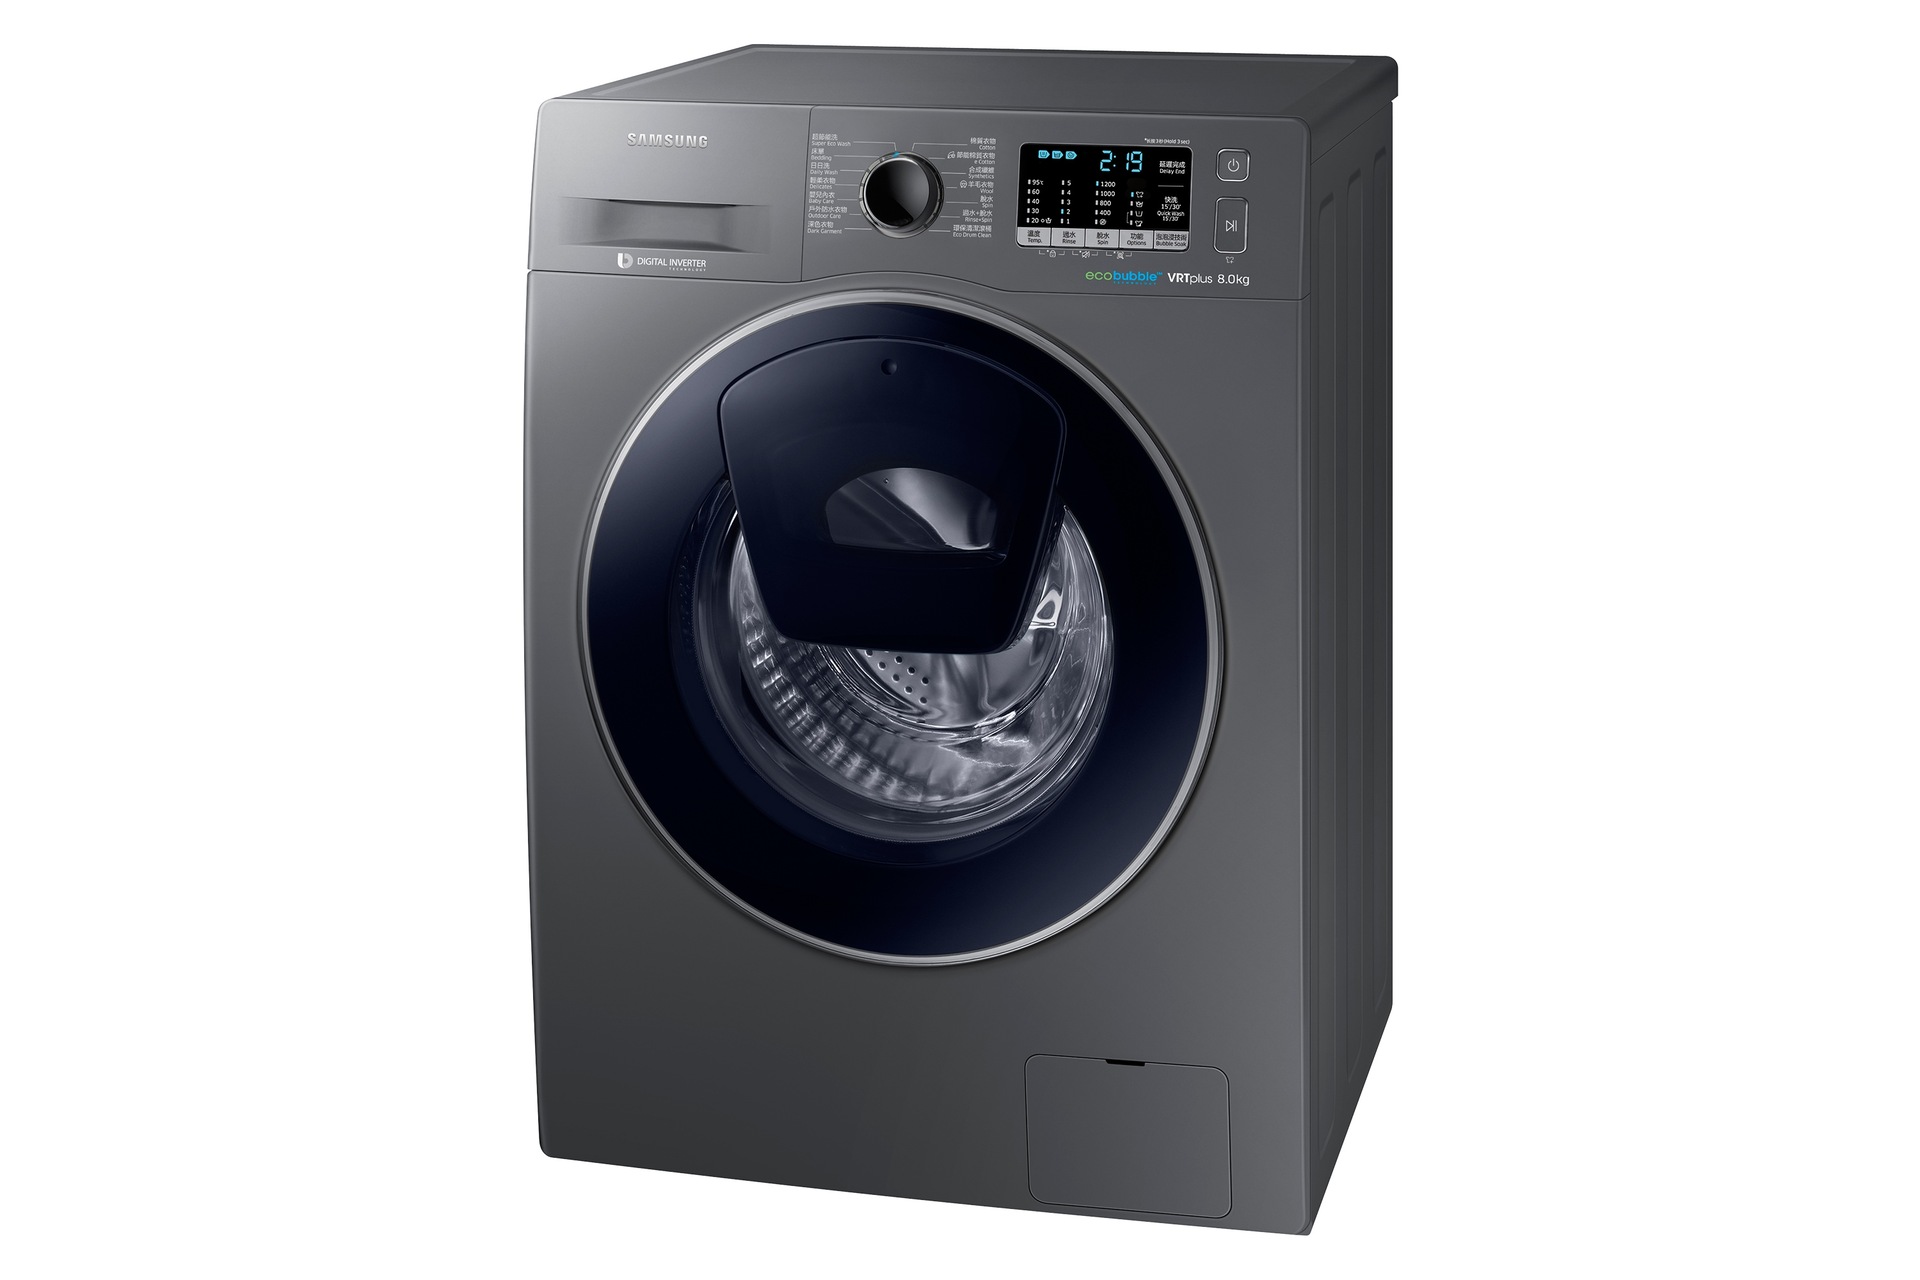 Ww80k5210vx Sh 前置式洗衣機8kg 銀色 白色 Ww80k5210vx Sh 三星電子香港